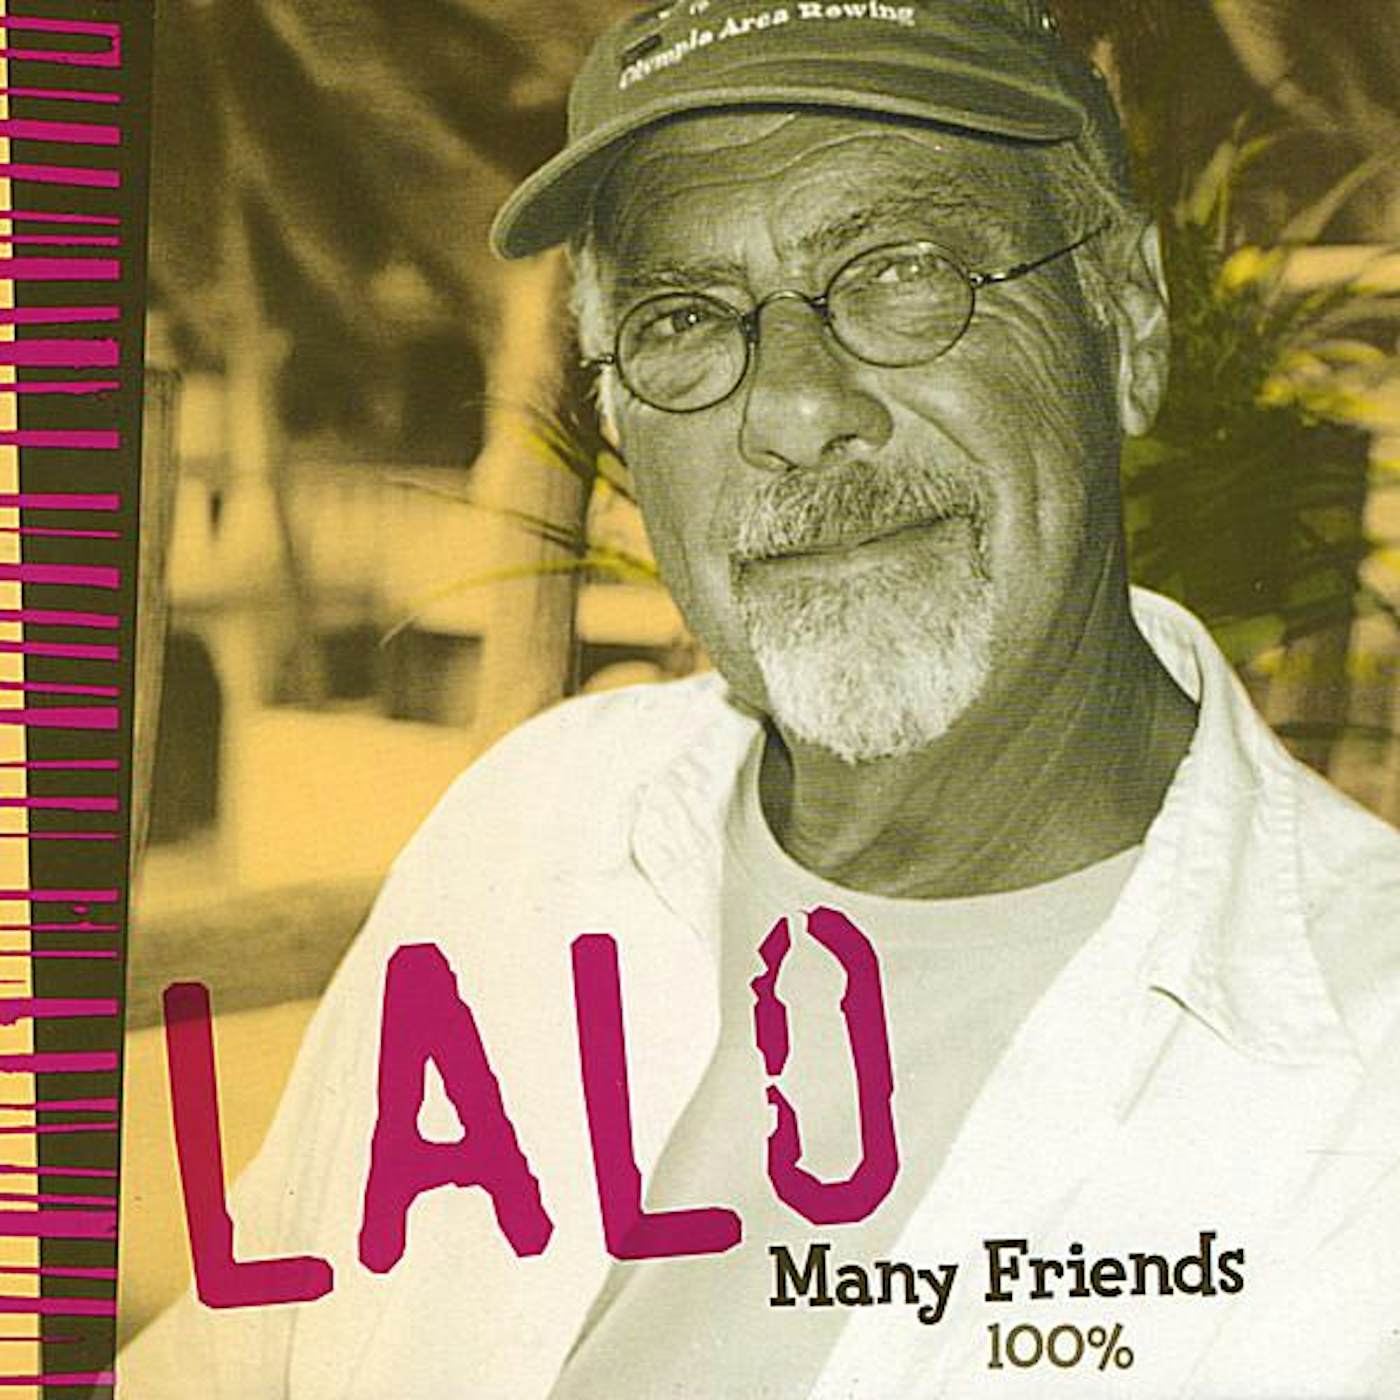 Lalo MANY FRIENDS 100 PERCENT CD